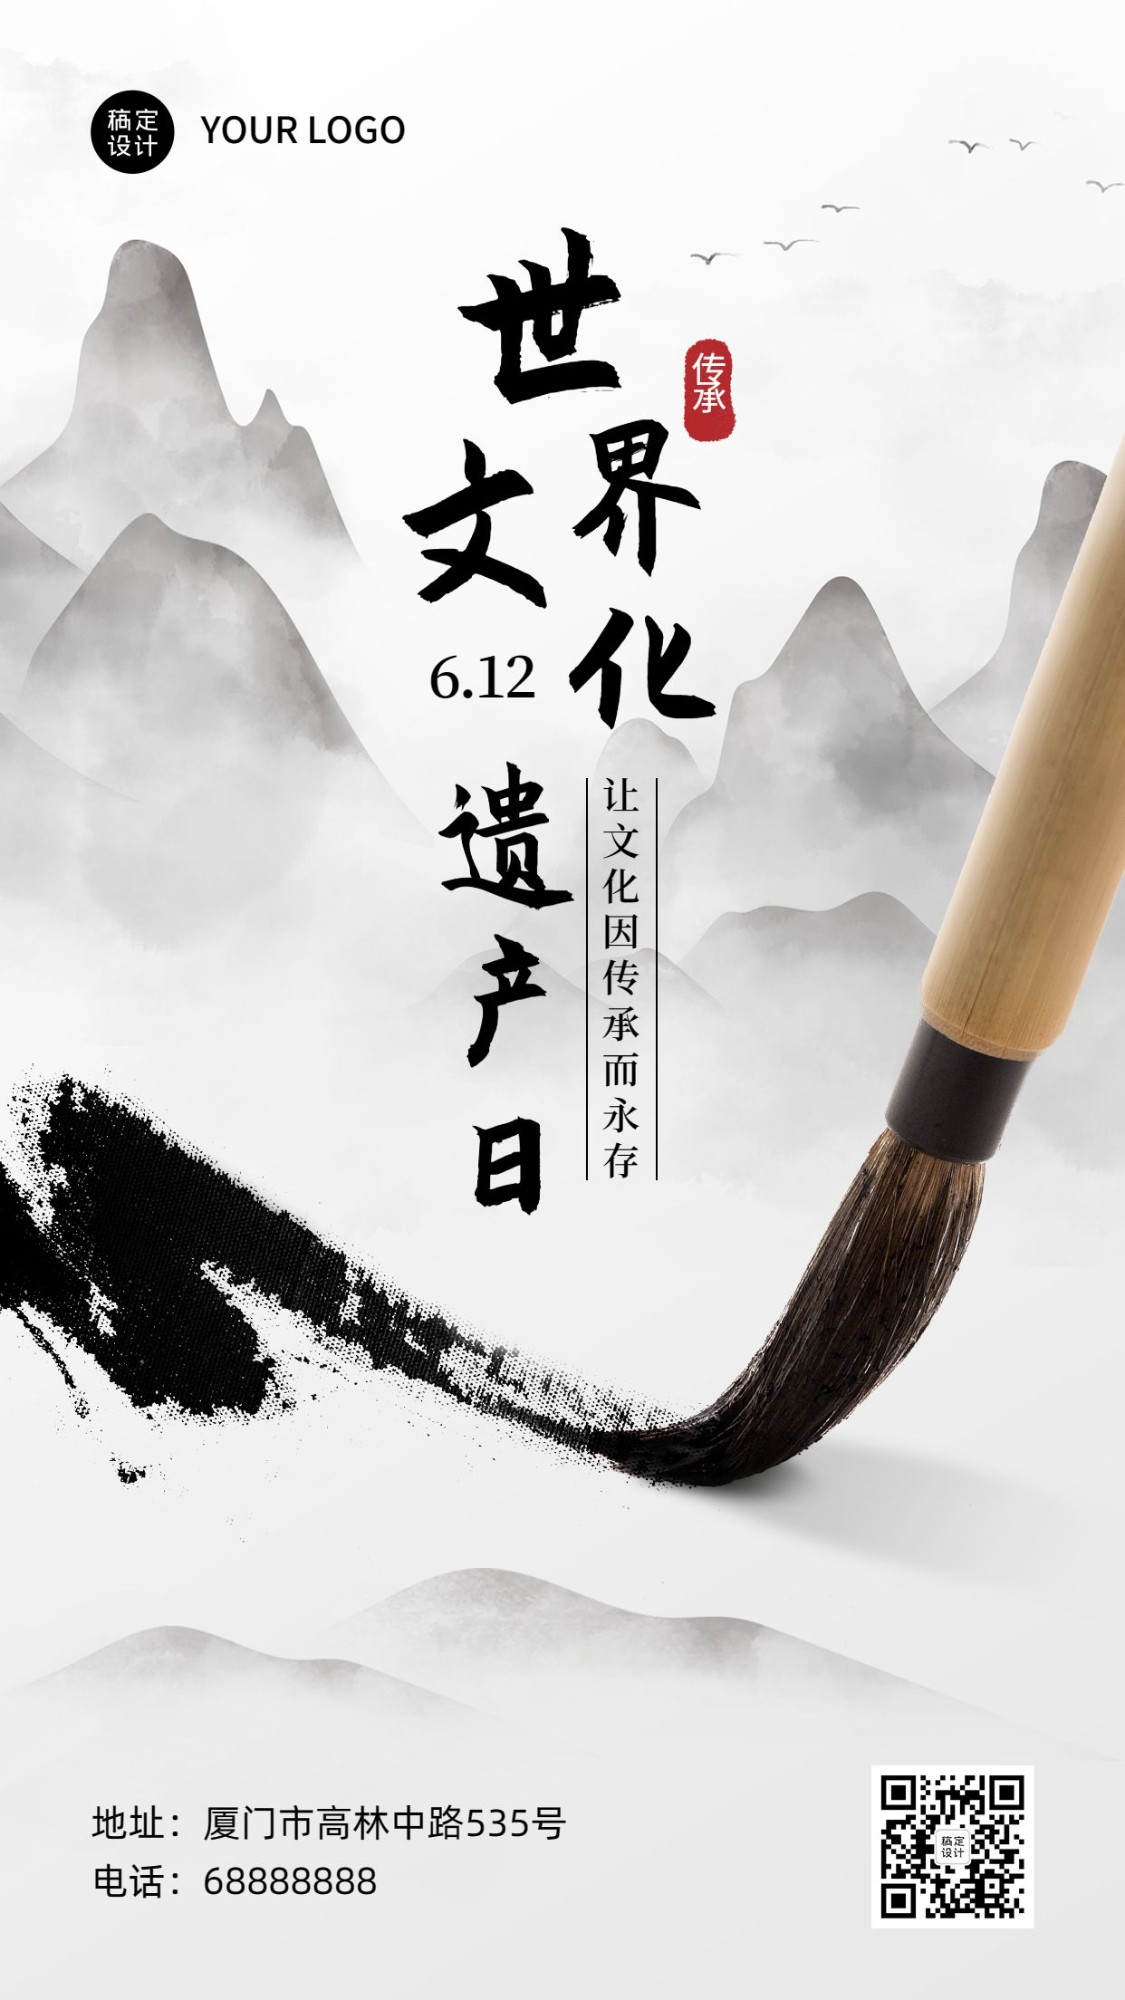 世界中国文化遗产日宣传中国风水墨画手机海报预览效果